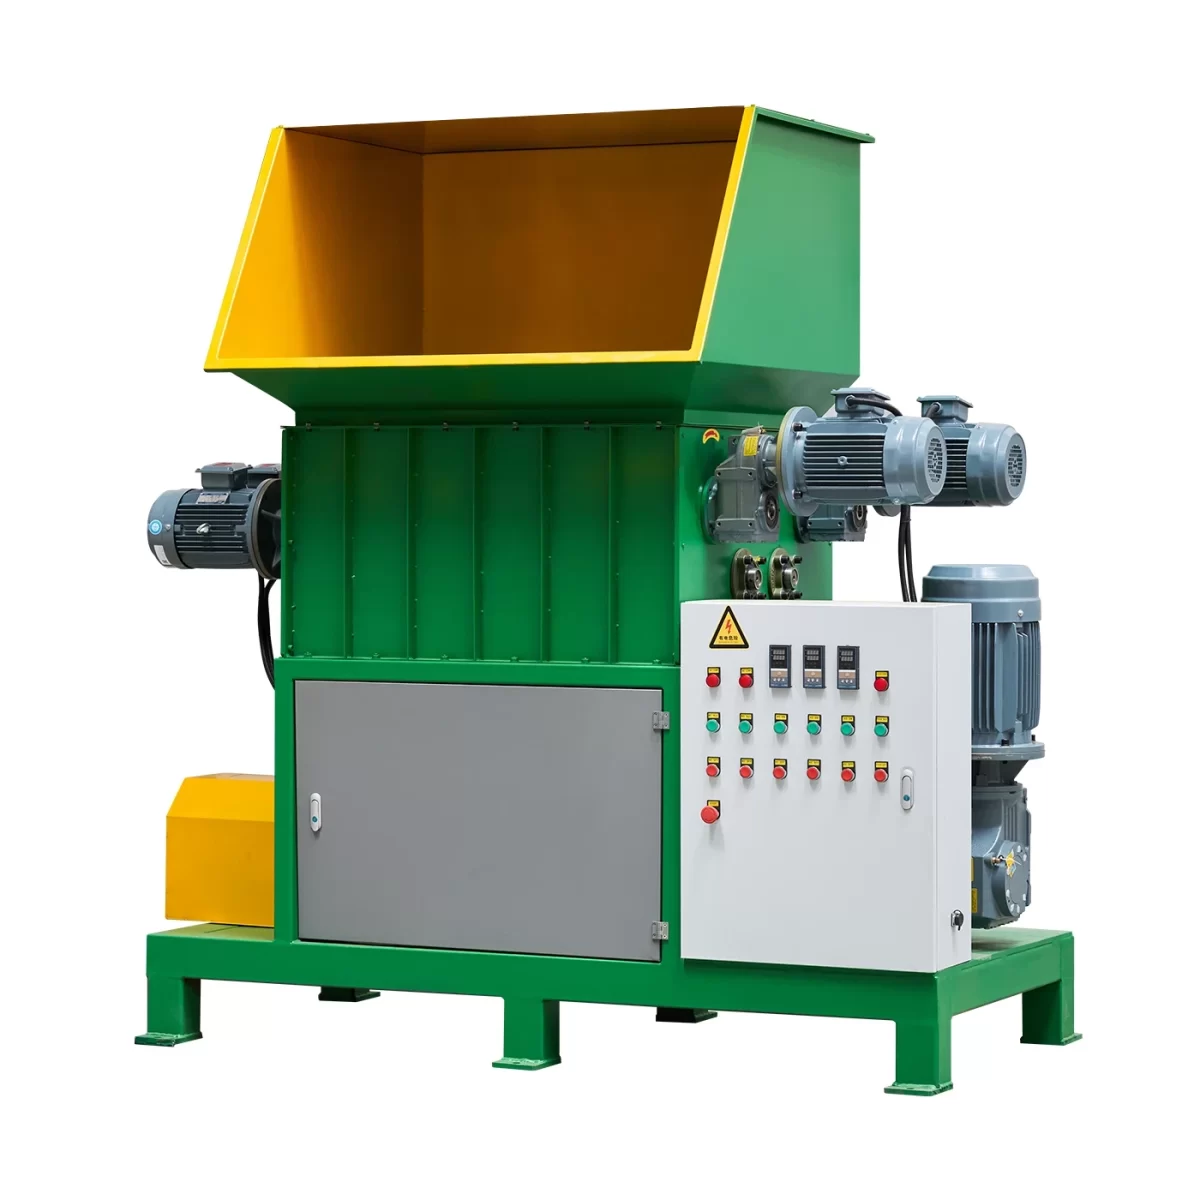 EPS melting machine with belt conveyer - eosmm 1 1 - Green Building EPS Machine